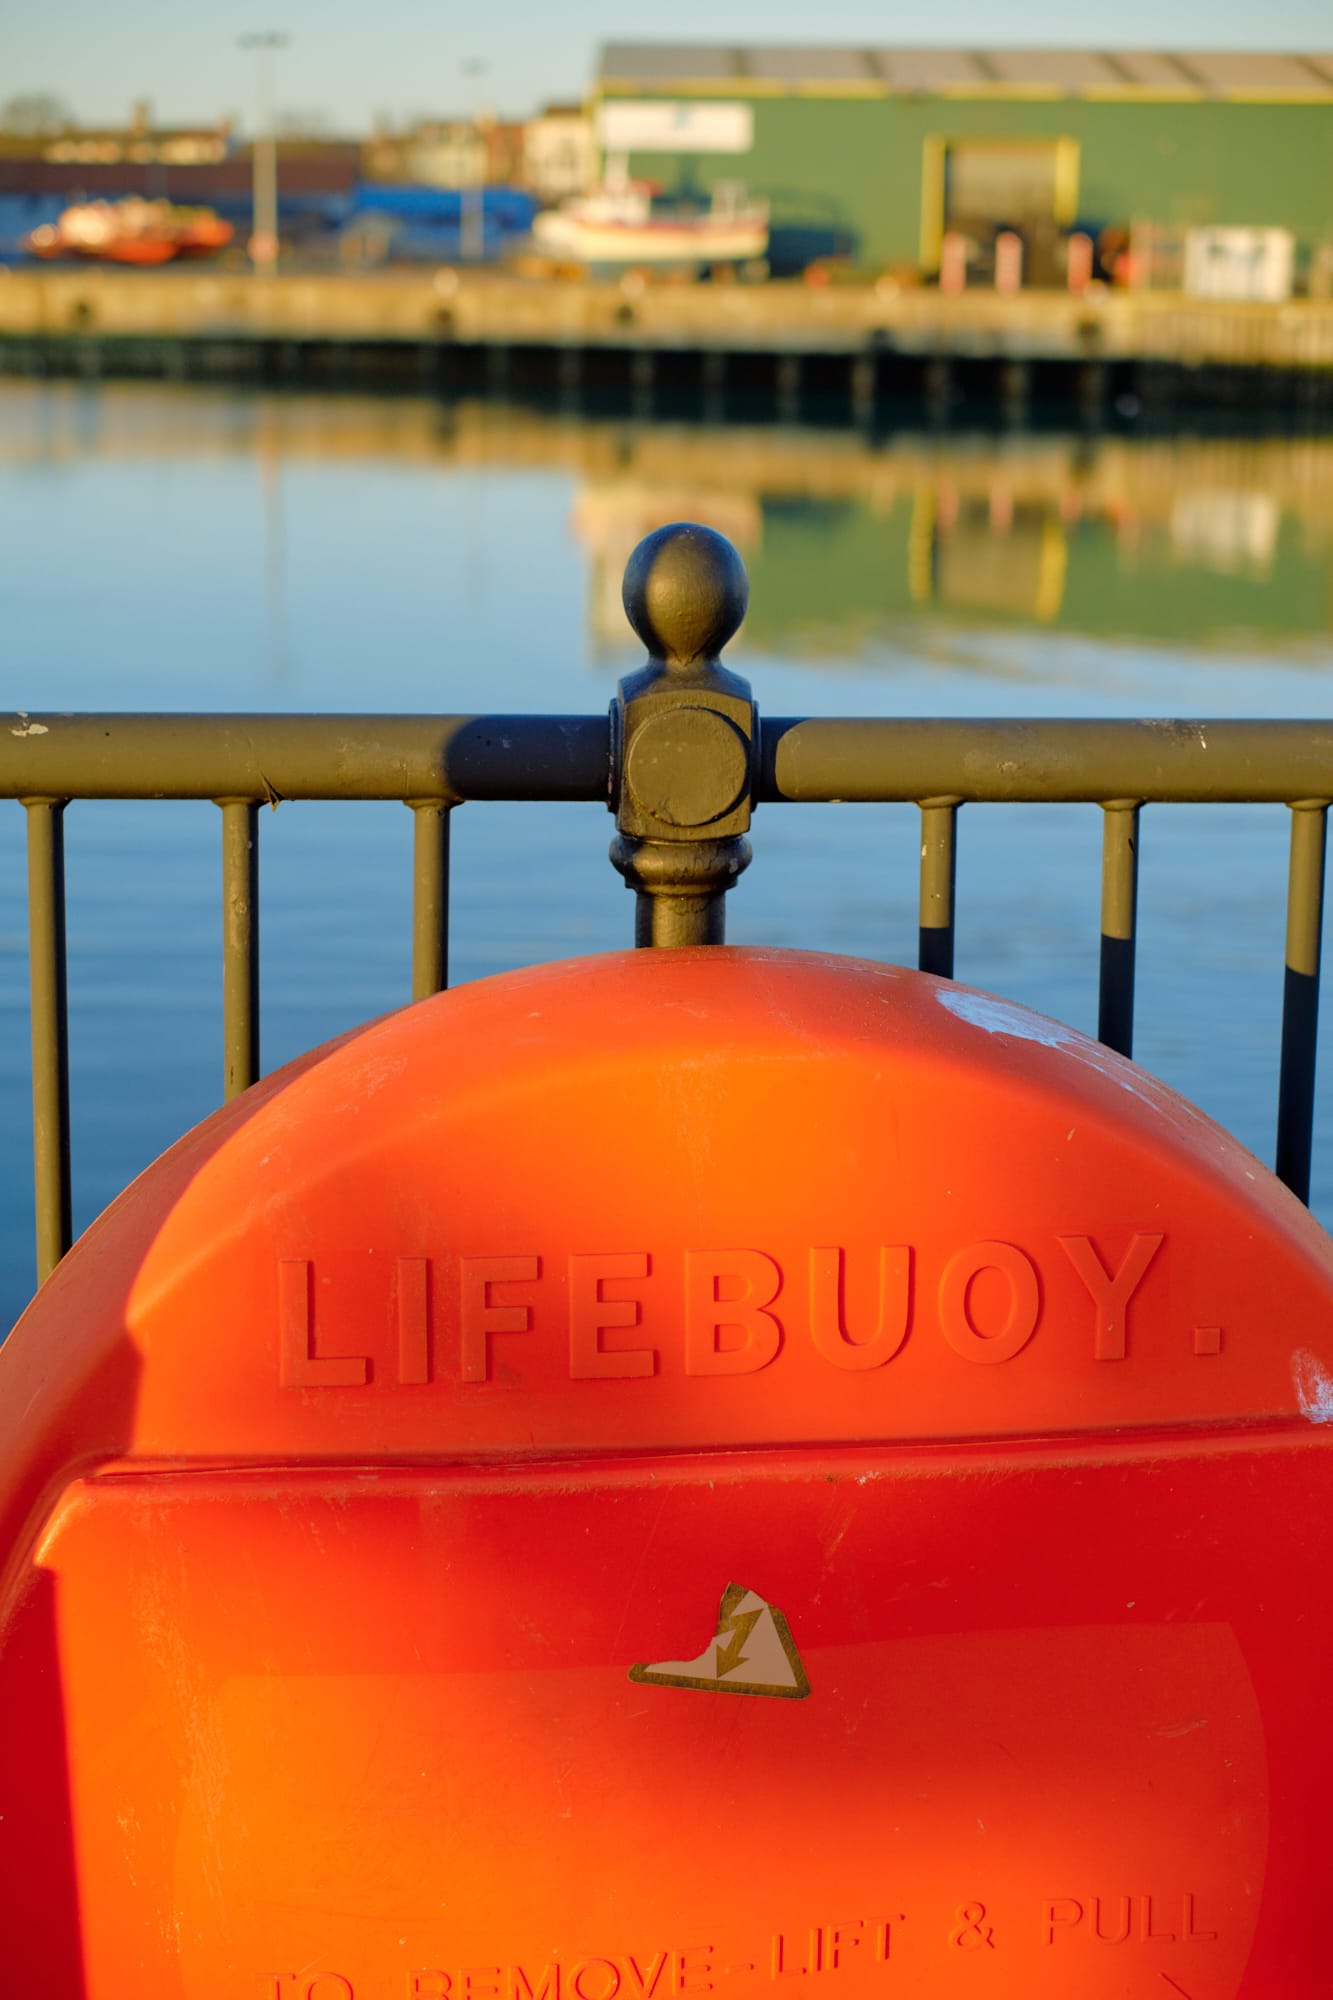 life buoy near Asda carpark